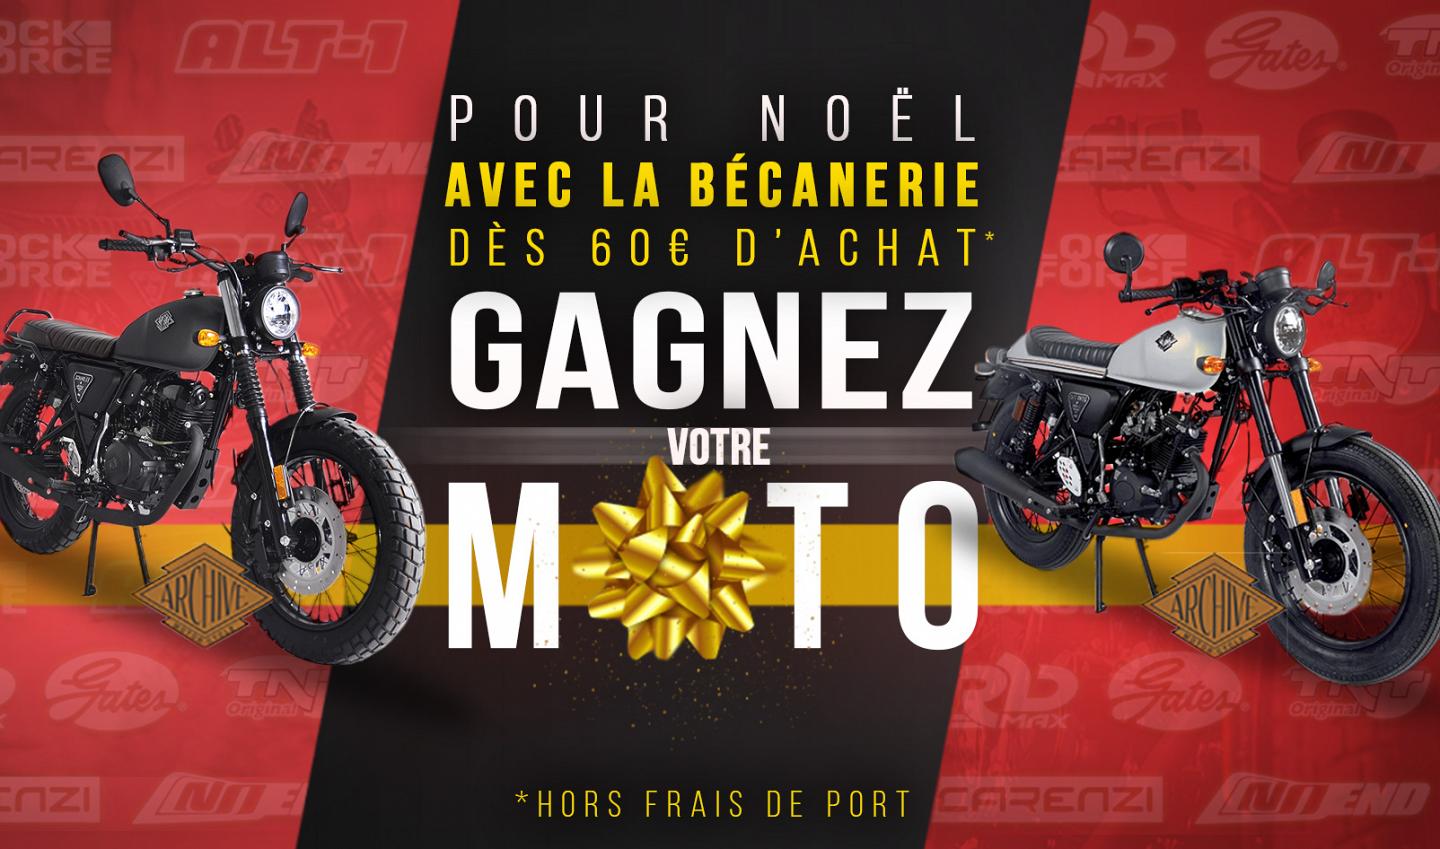 Gagnez votre moto pour Noël avec La Bécanerie !